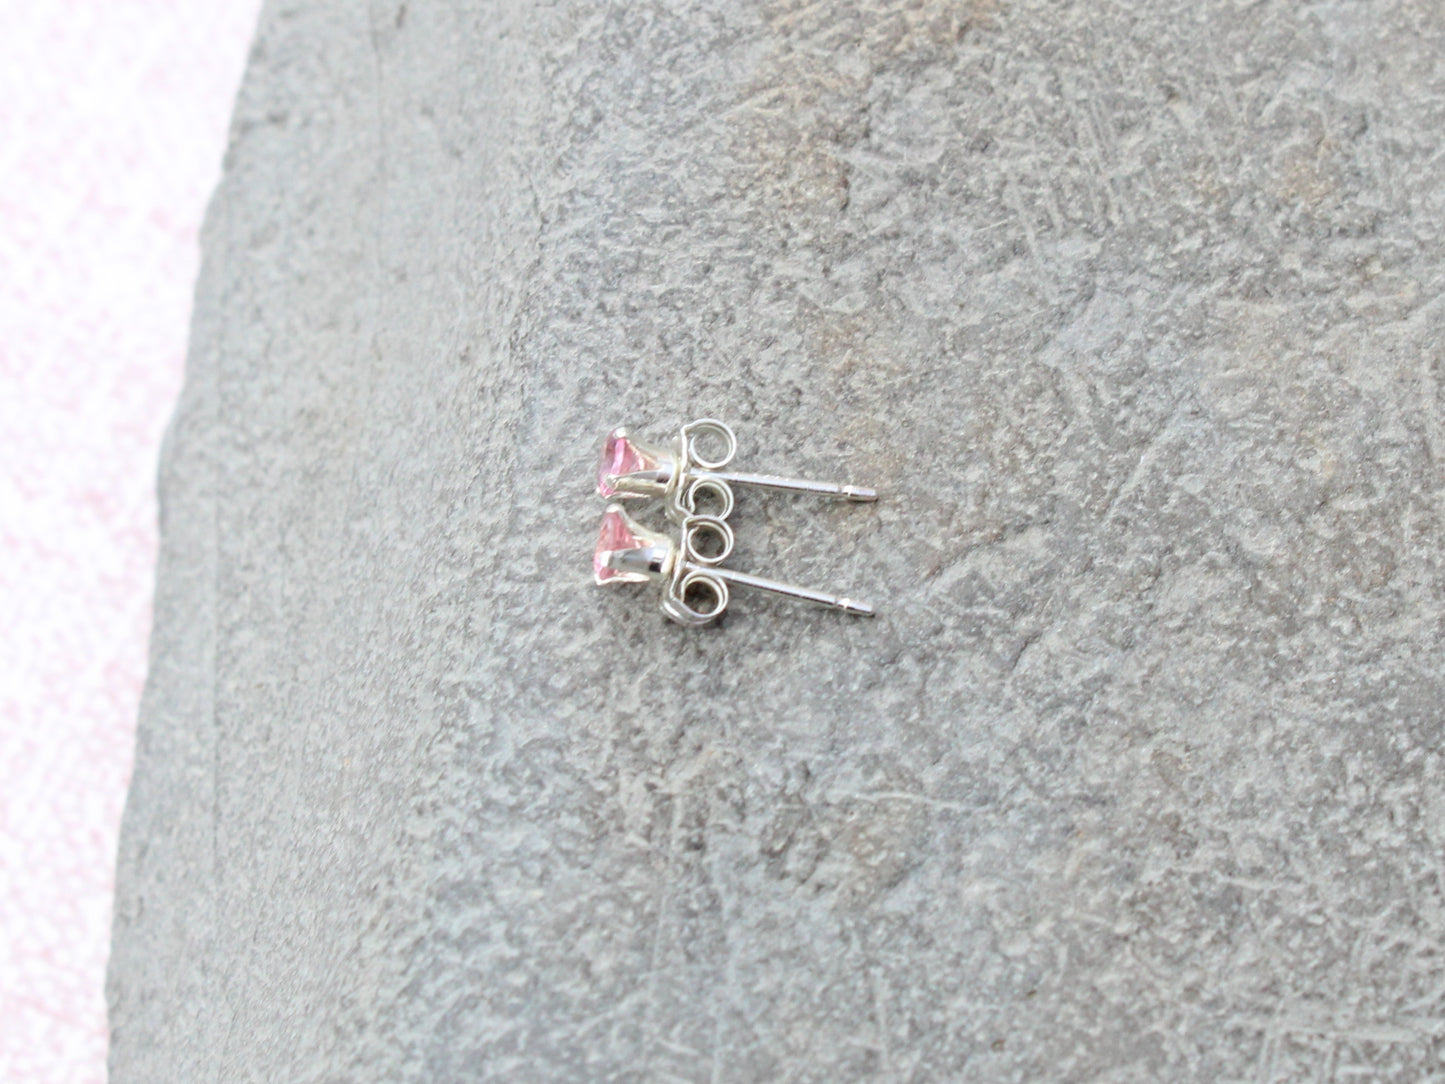 Pink tourmaline stud earrings in sterling silver.